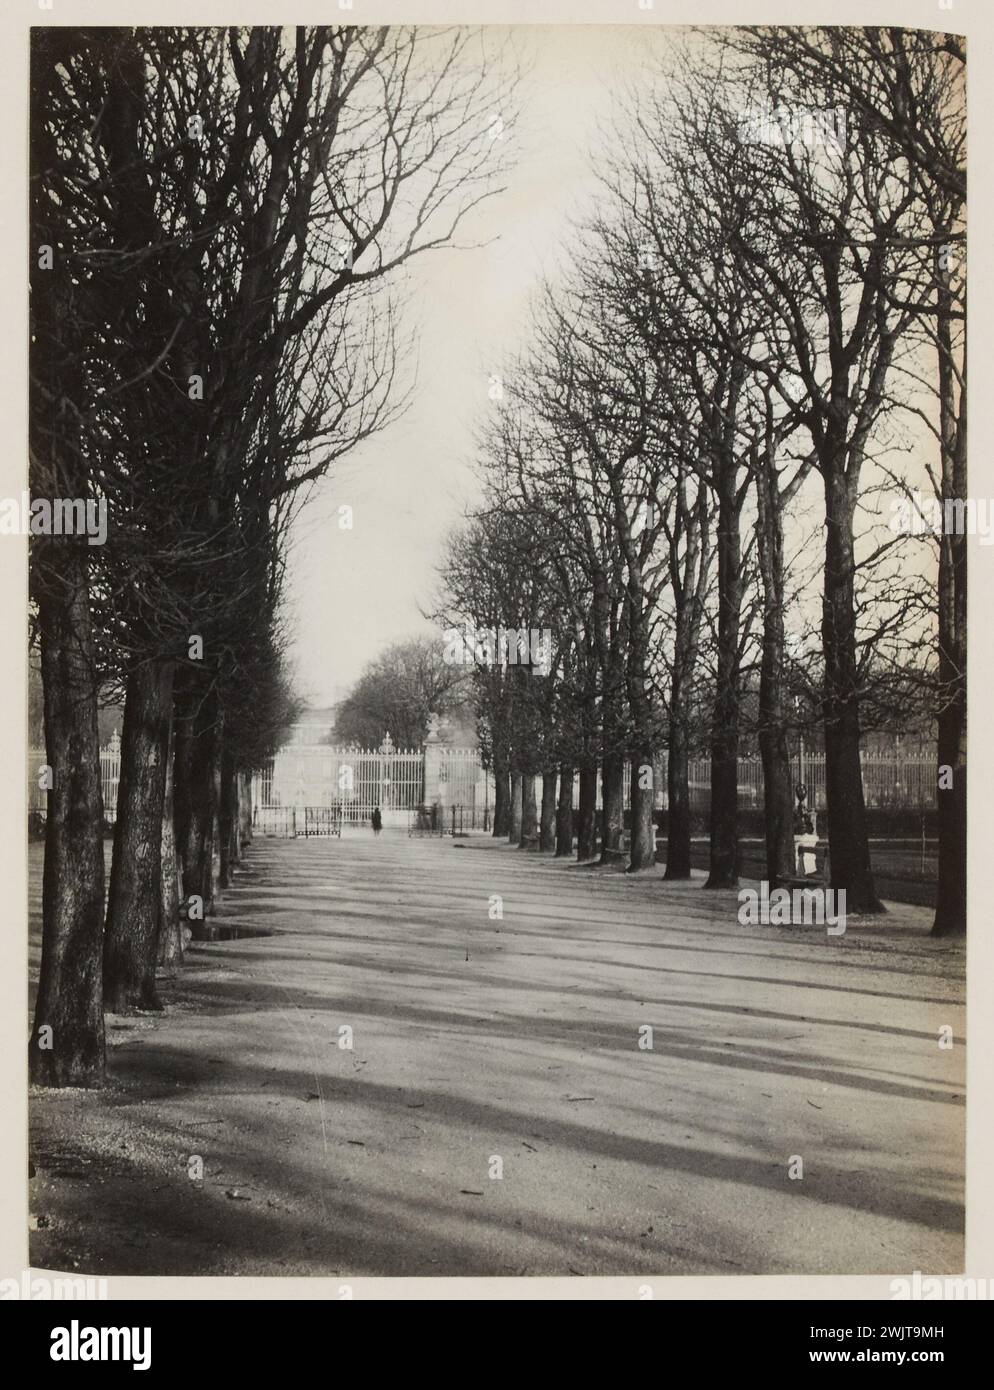 Blancard, Hippolyte (1843 - D.1924), square on the avenue de l'Observatoire, 6th arrondissement, Paris (dummy title), 1890. Platinum draw. Carnavalet museum, history of Paris. Stock Photo